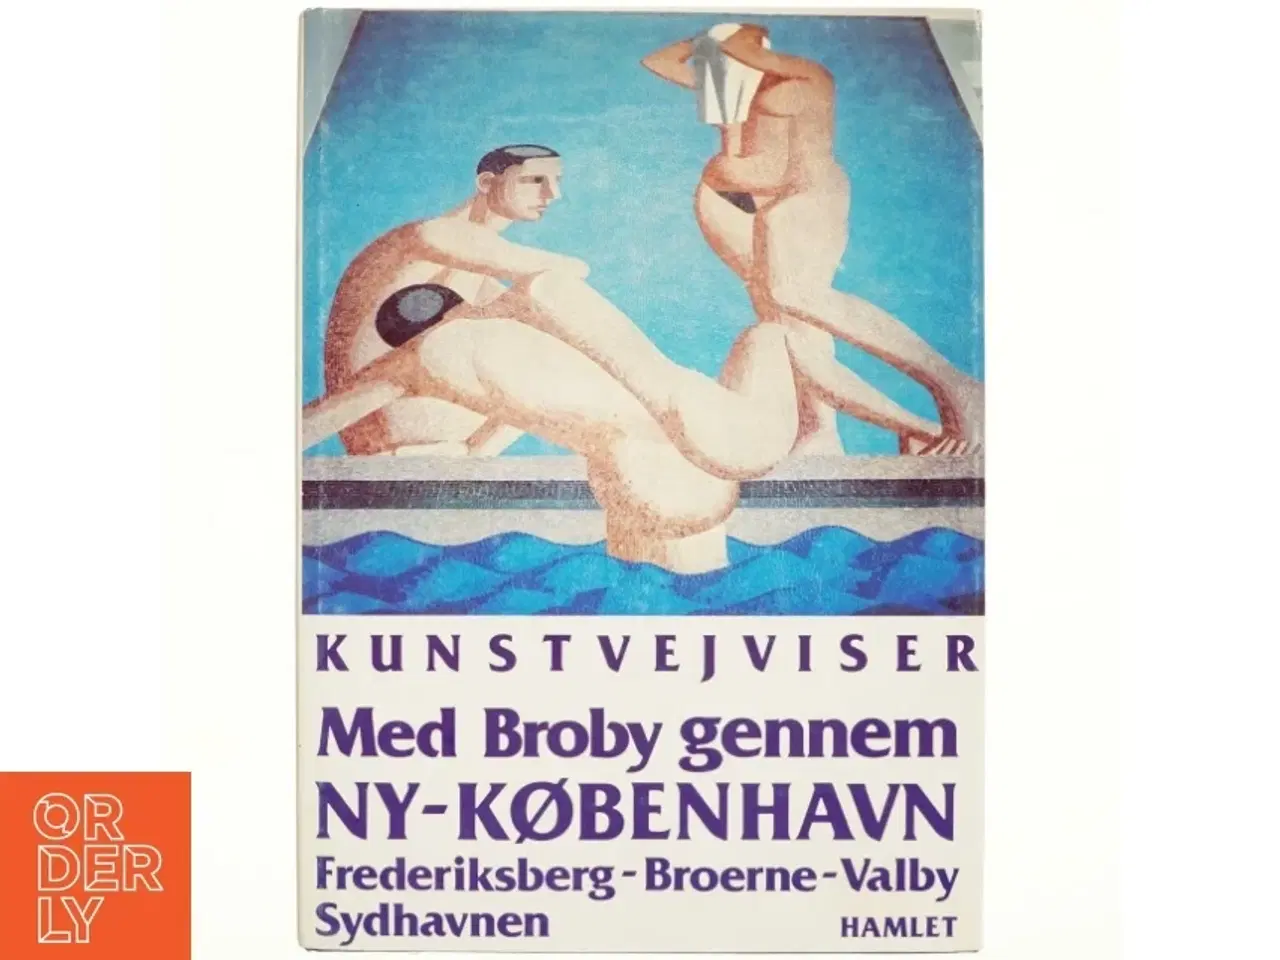 Billede 1 - Kunstvejviser med Broby gennem Ny-København